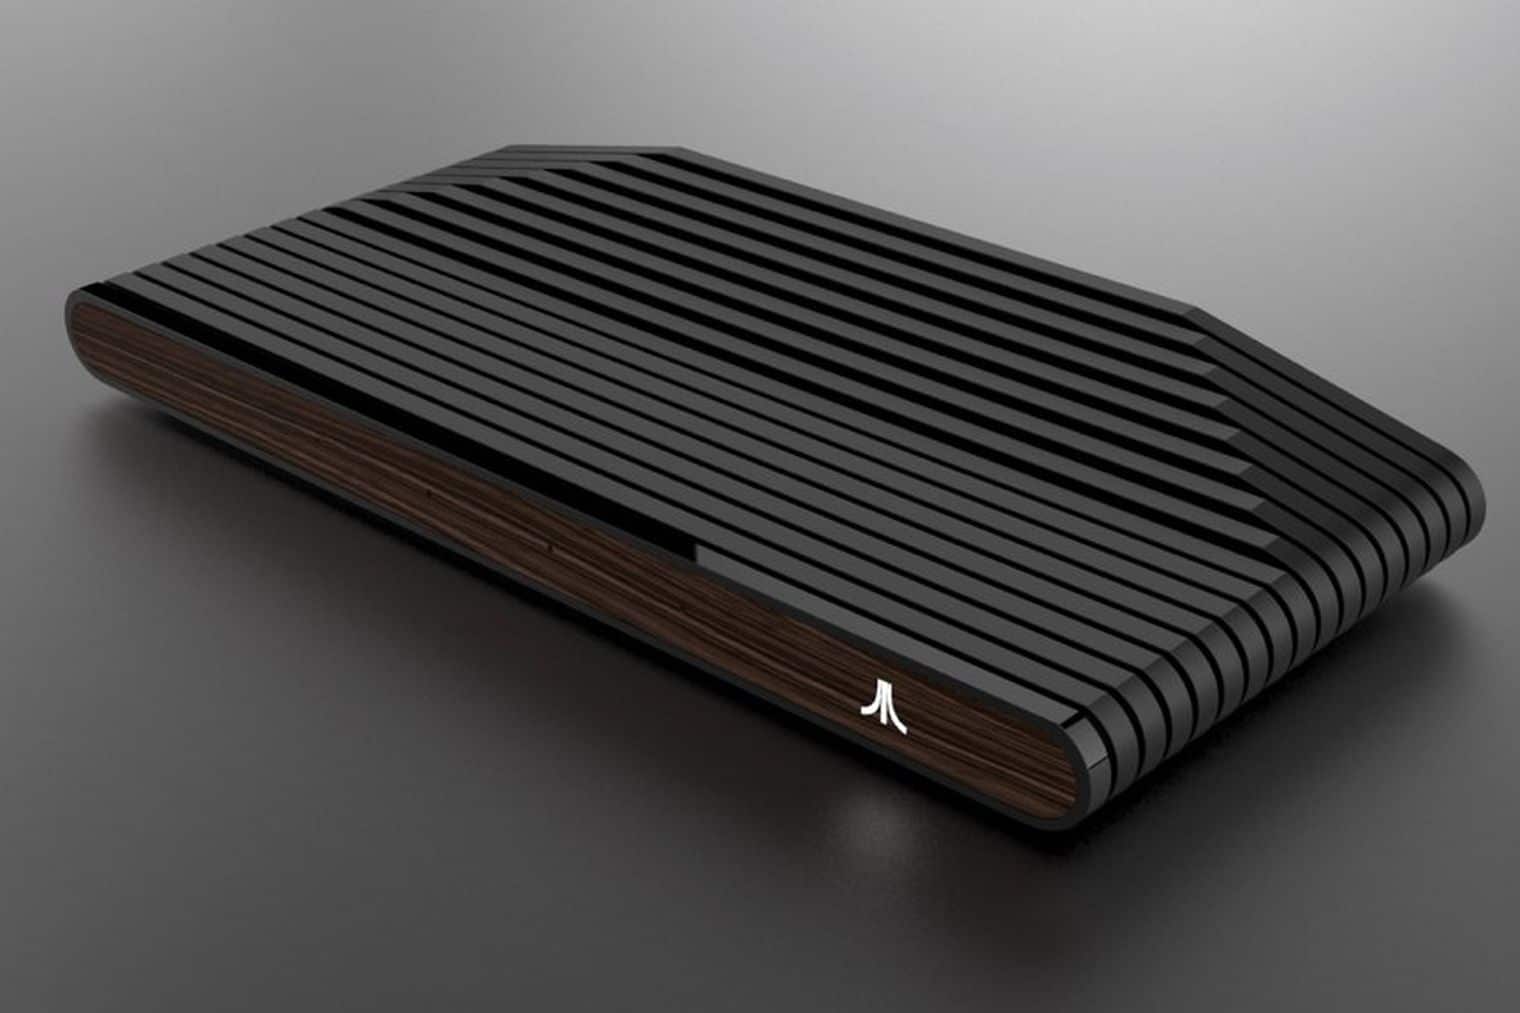 Das wird die Ataribox. (Foto: Atari)